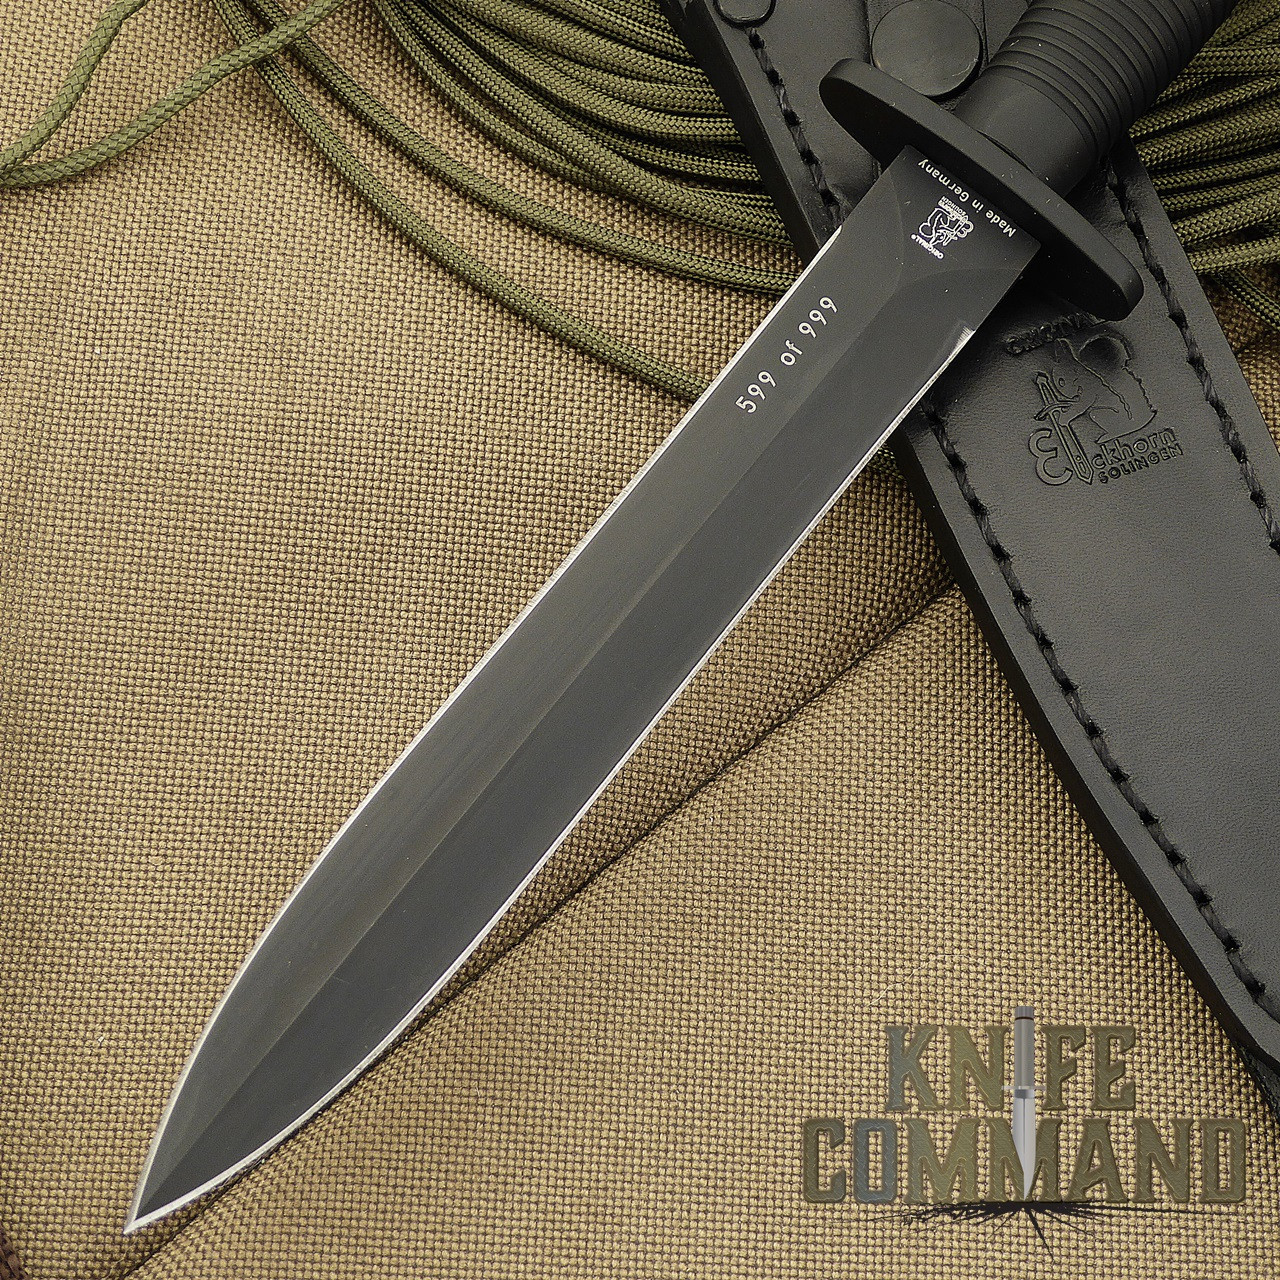 Eickhorn Solingen FS2000 Fairbairn Sykes Combat Dagger.  Black Kal-Gard coated Bohler 55Si7 steel.